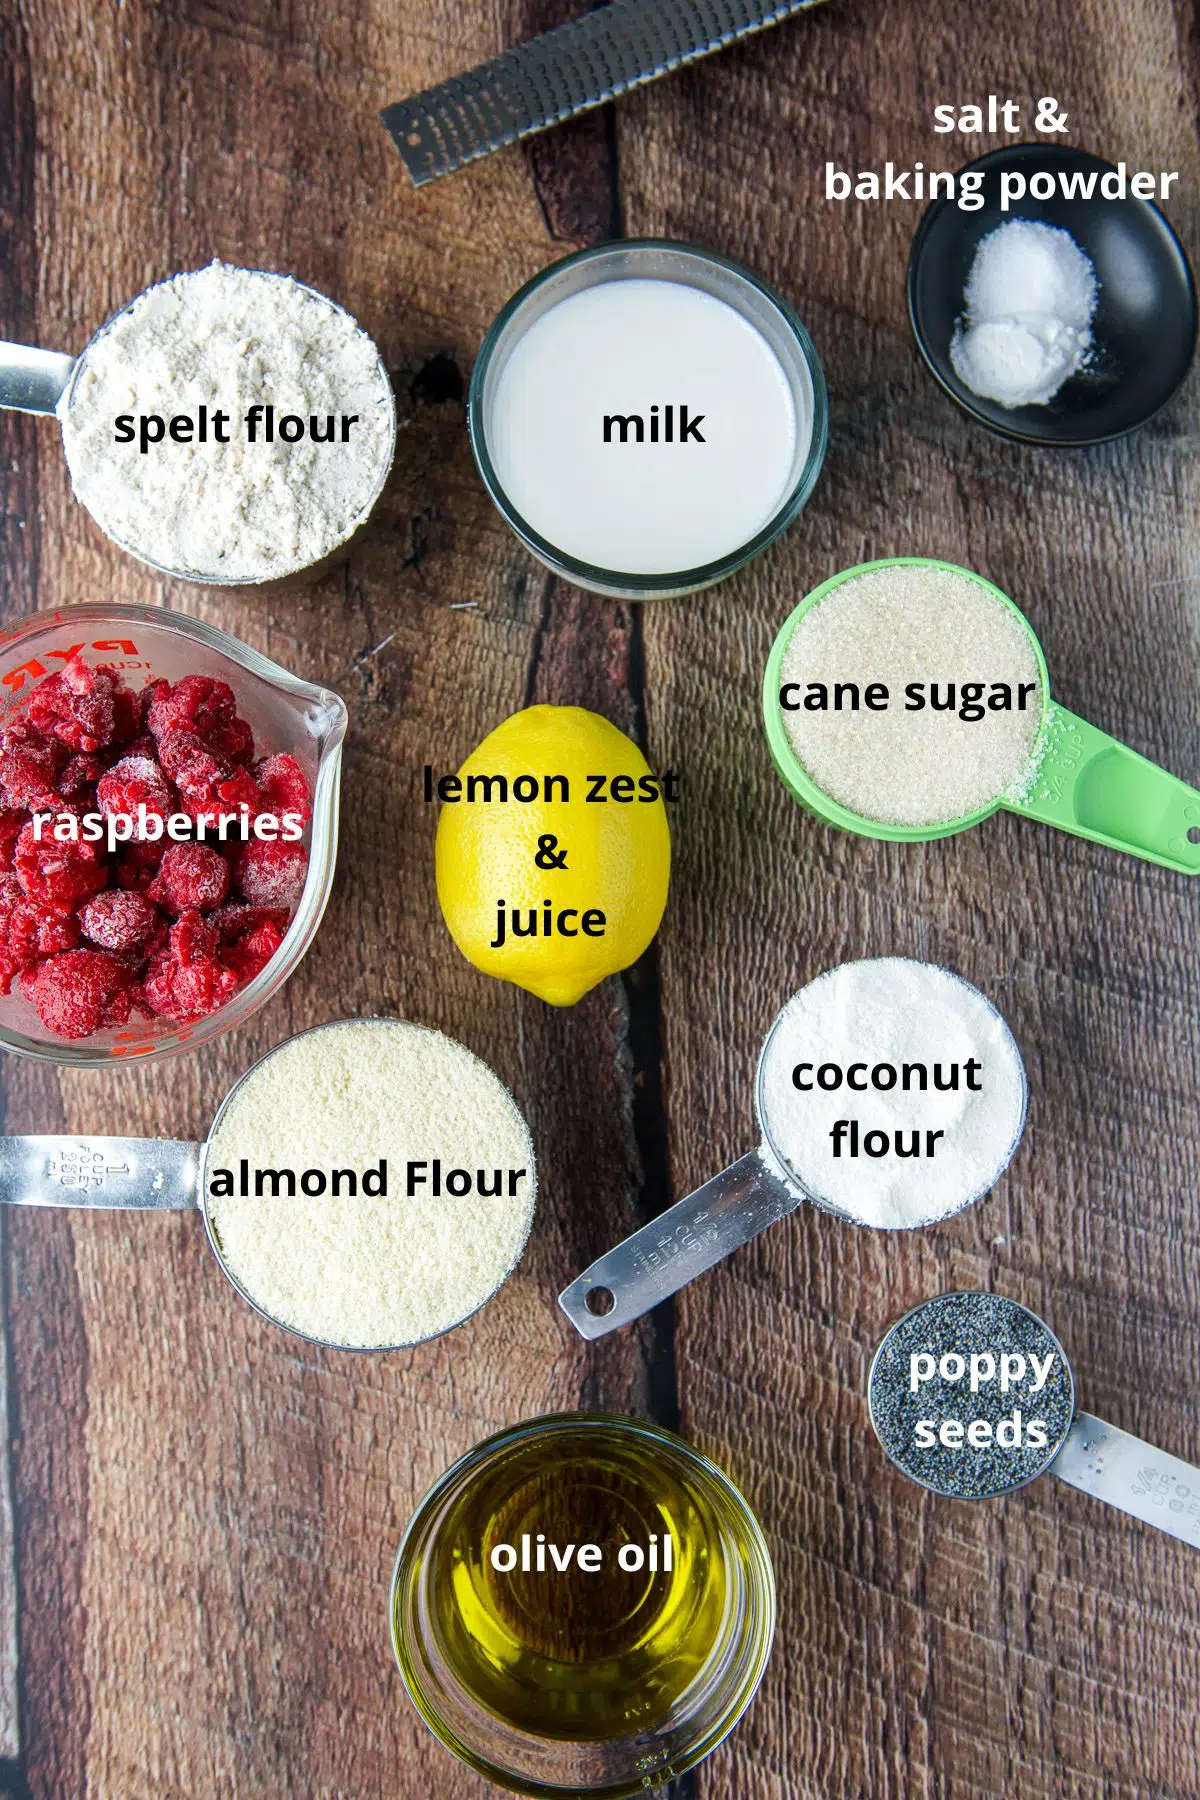 overhead view of ingredients - flours, sugar, poppy seeds, oil, milk, raspberries and baking powder